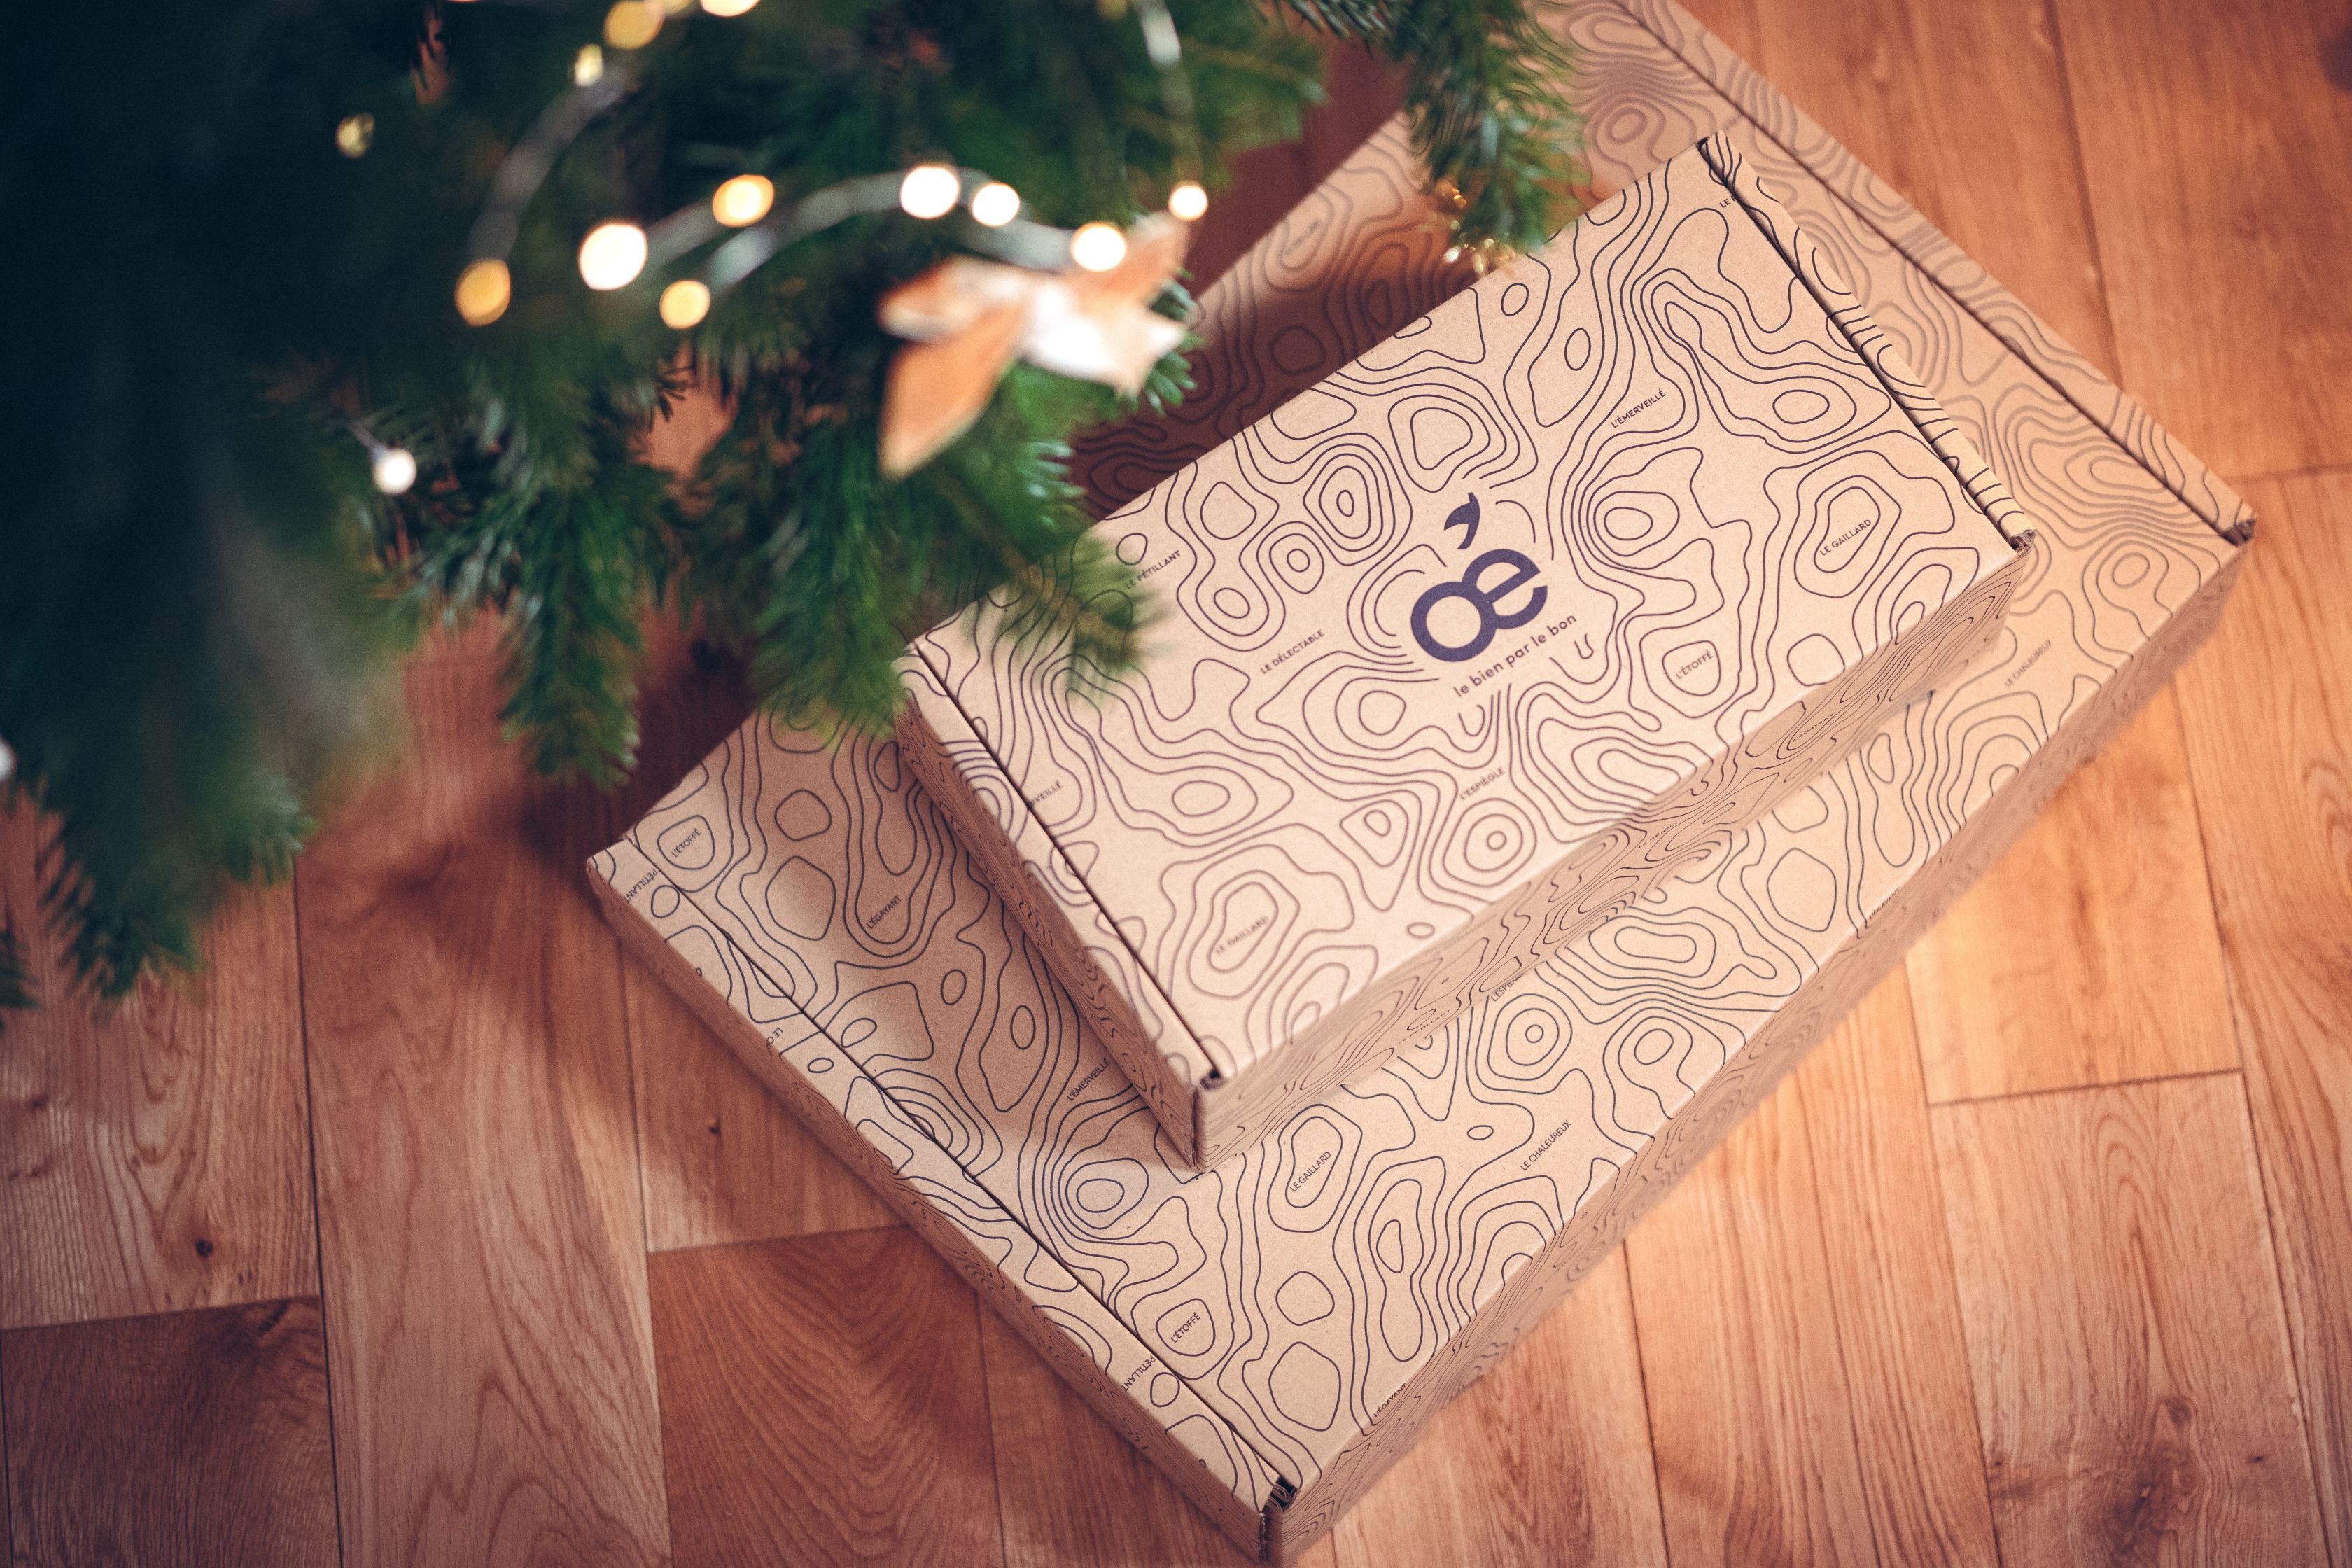 10 idées de cadeaux écologiques et éthiques à offrir pour Noël